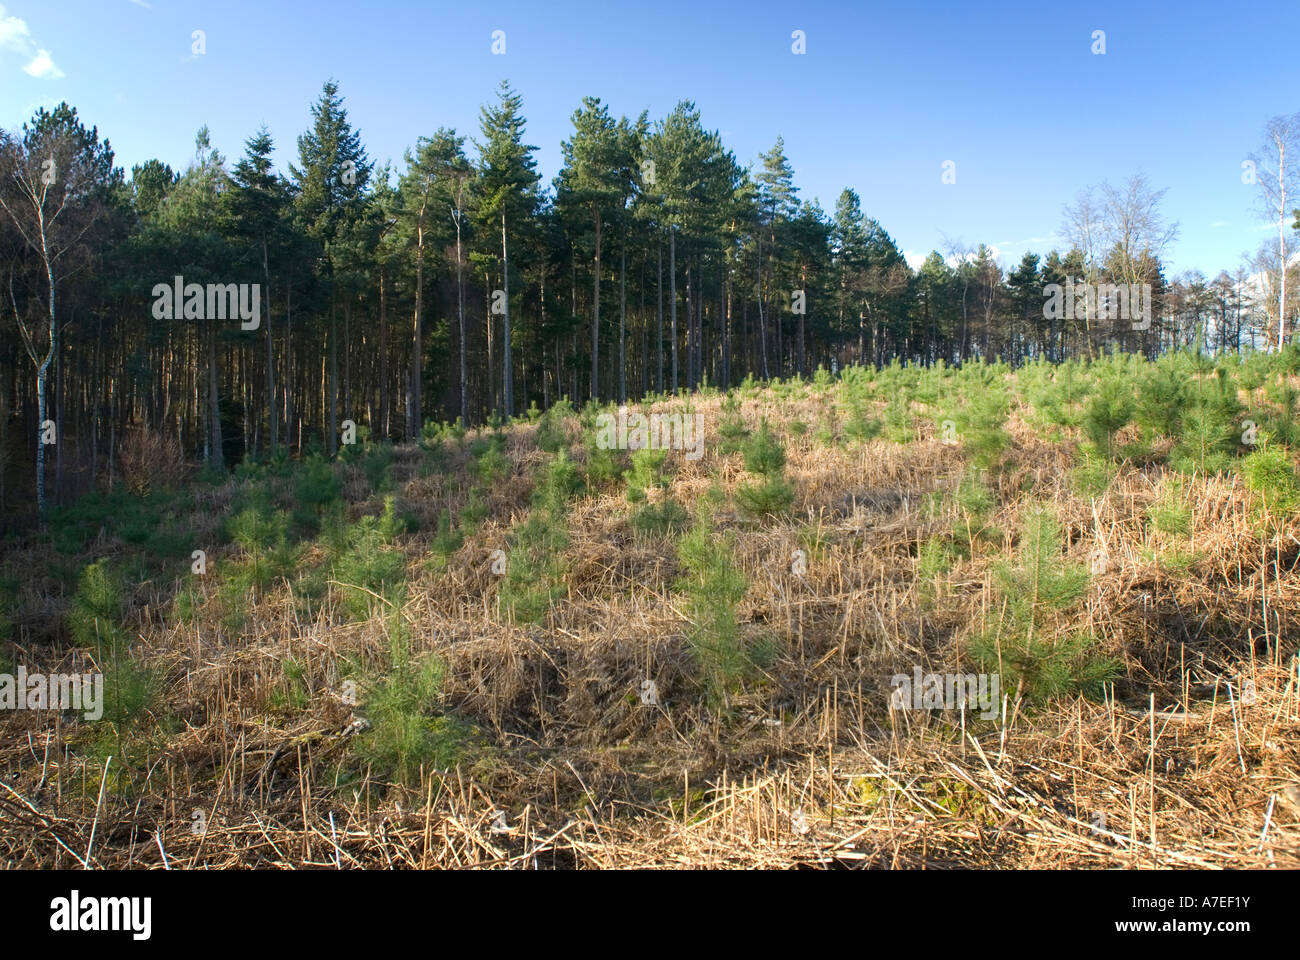 Jeunes arbres grandissent dans une clairière à Chicksands UK Bedfordshire bois Banque D'Images